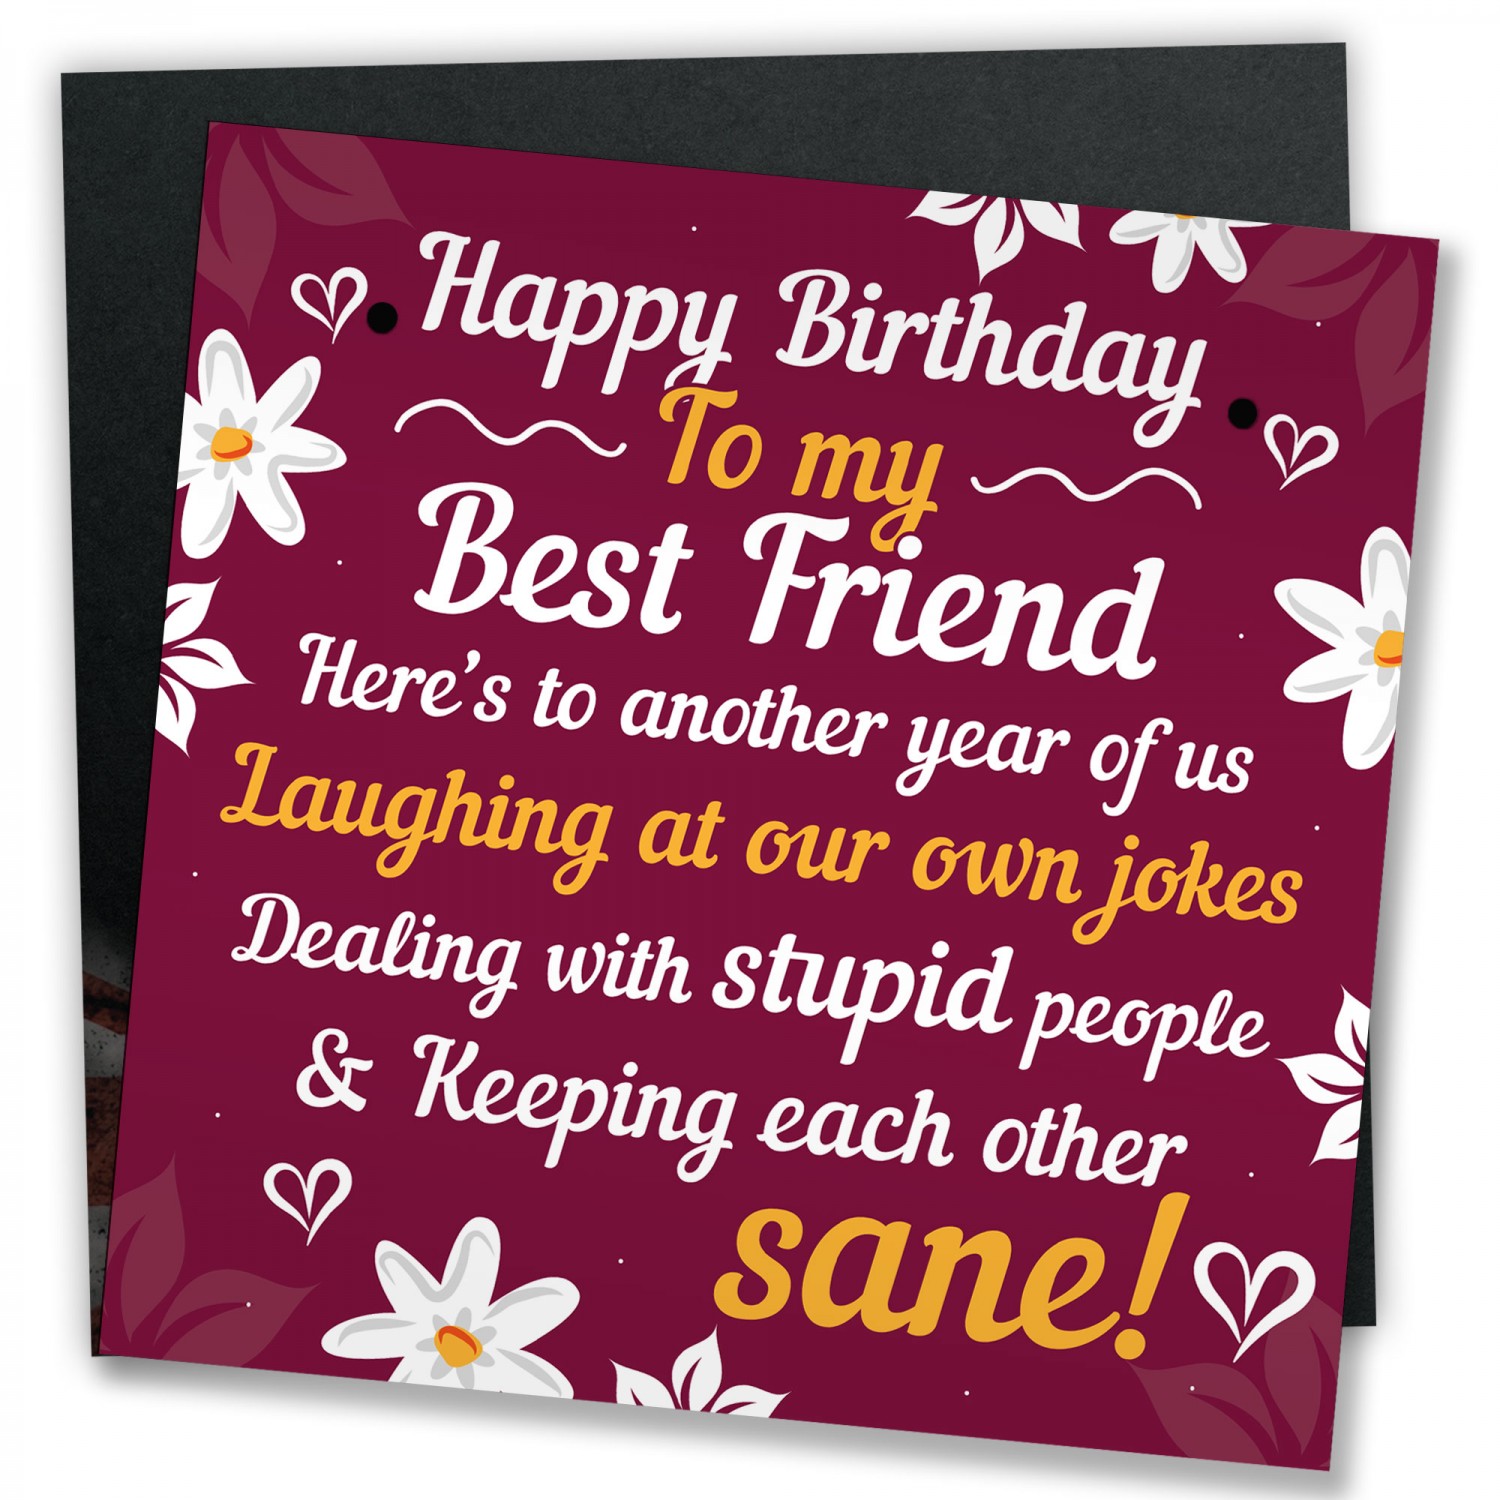  HAPPY  BIRTHDAY  Card Best  Friend  Birthday  Gift Friendship 